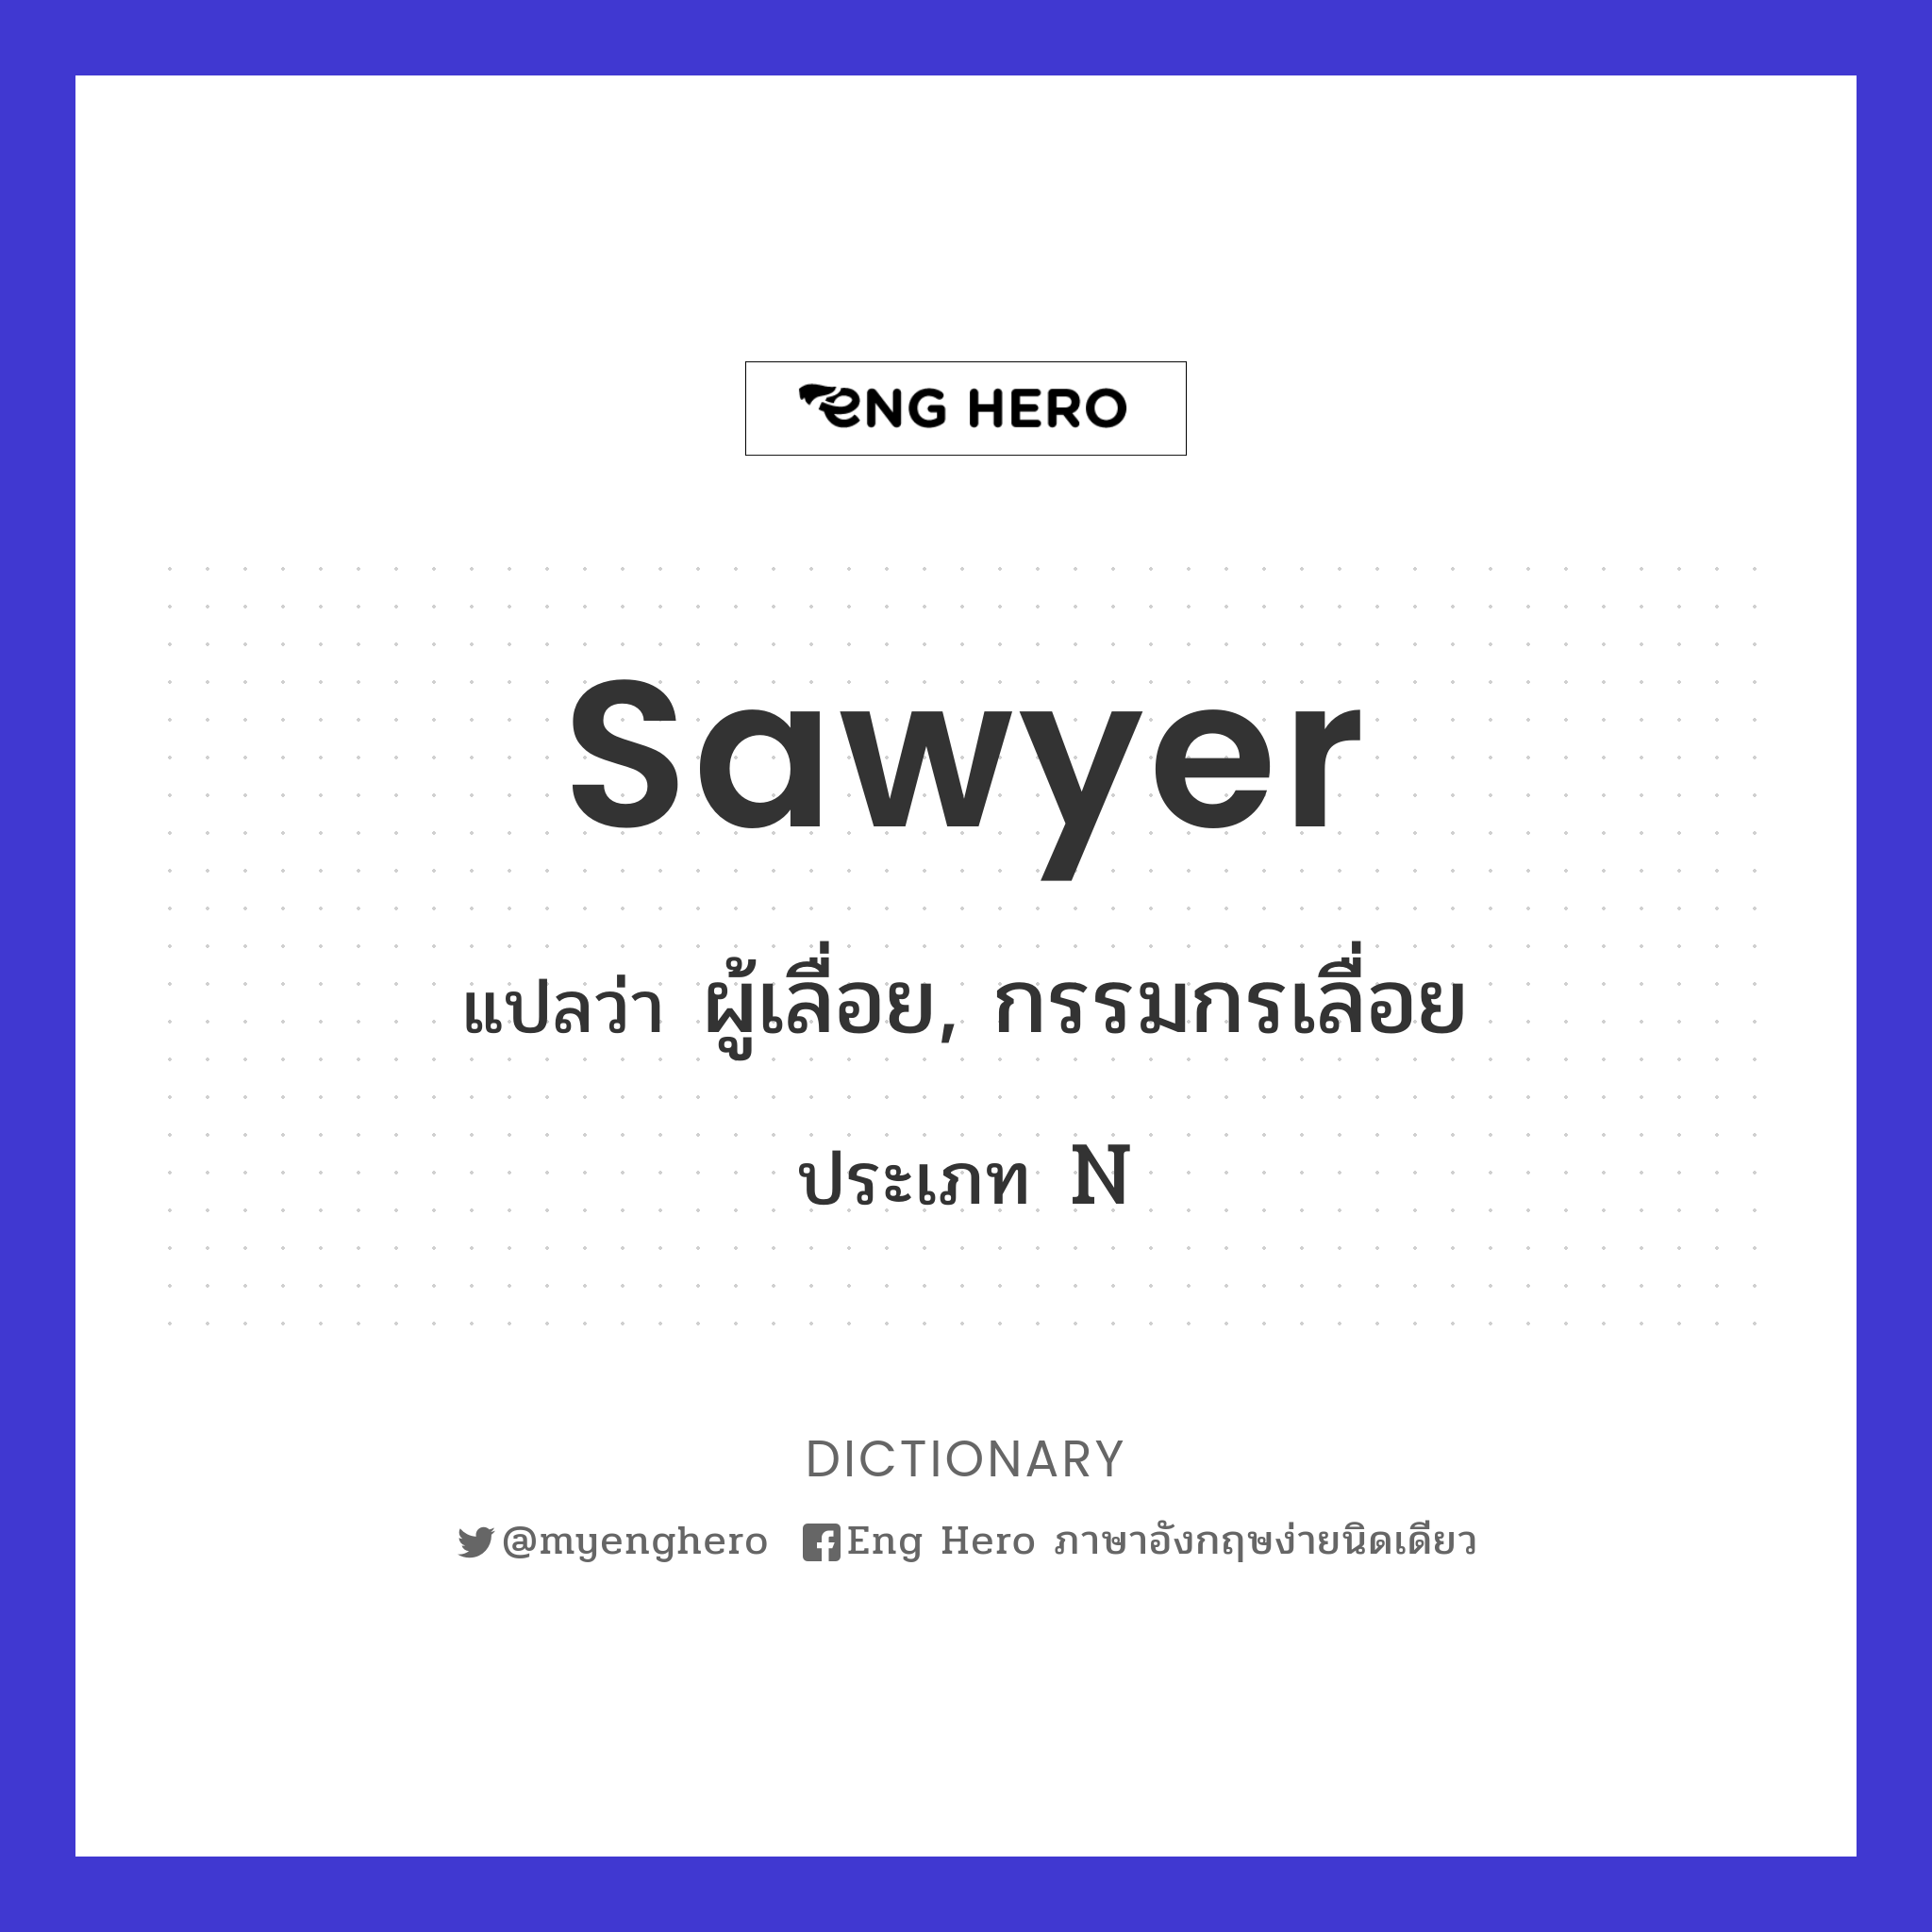 sawyer